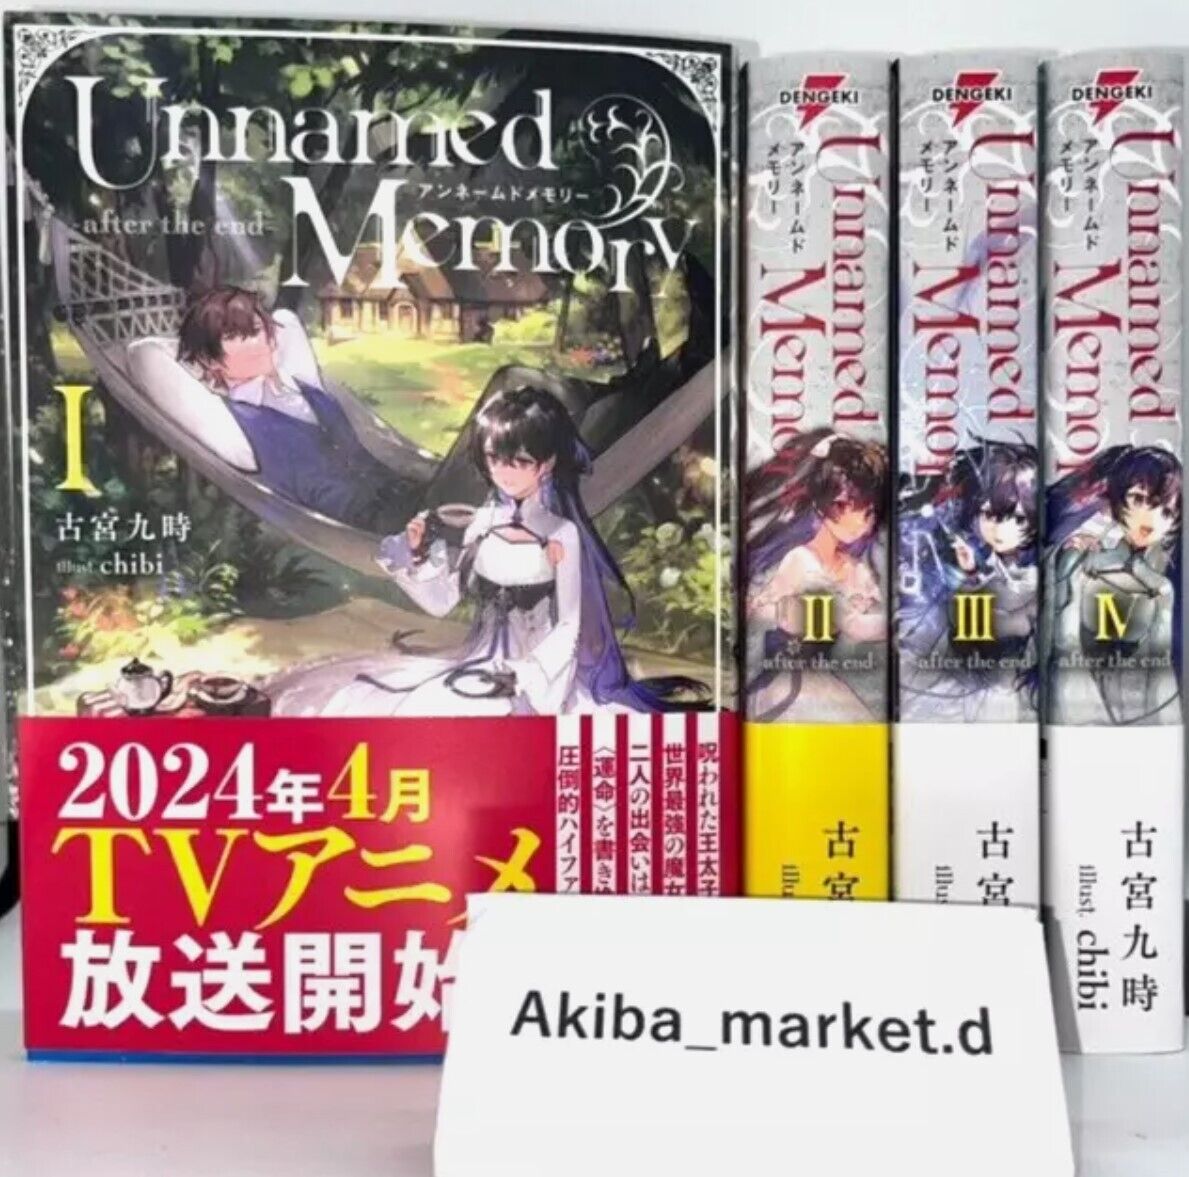 Unnamed Memory & After the End Vol.1-10 Complete Set Japanese Ver Light Novel